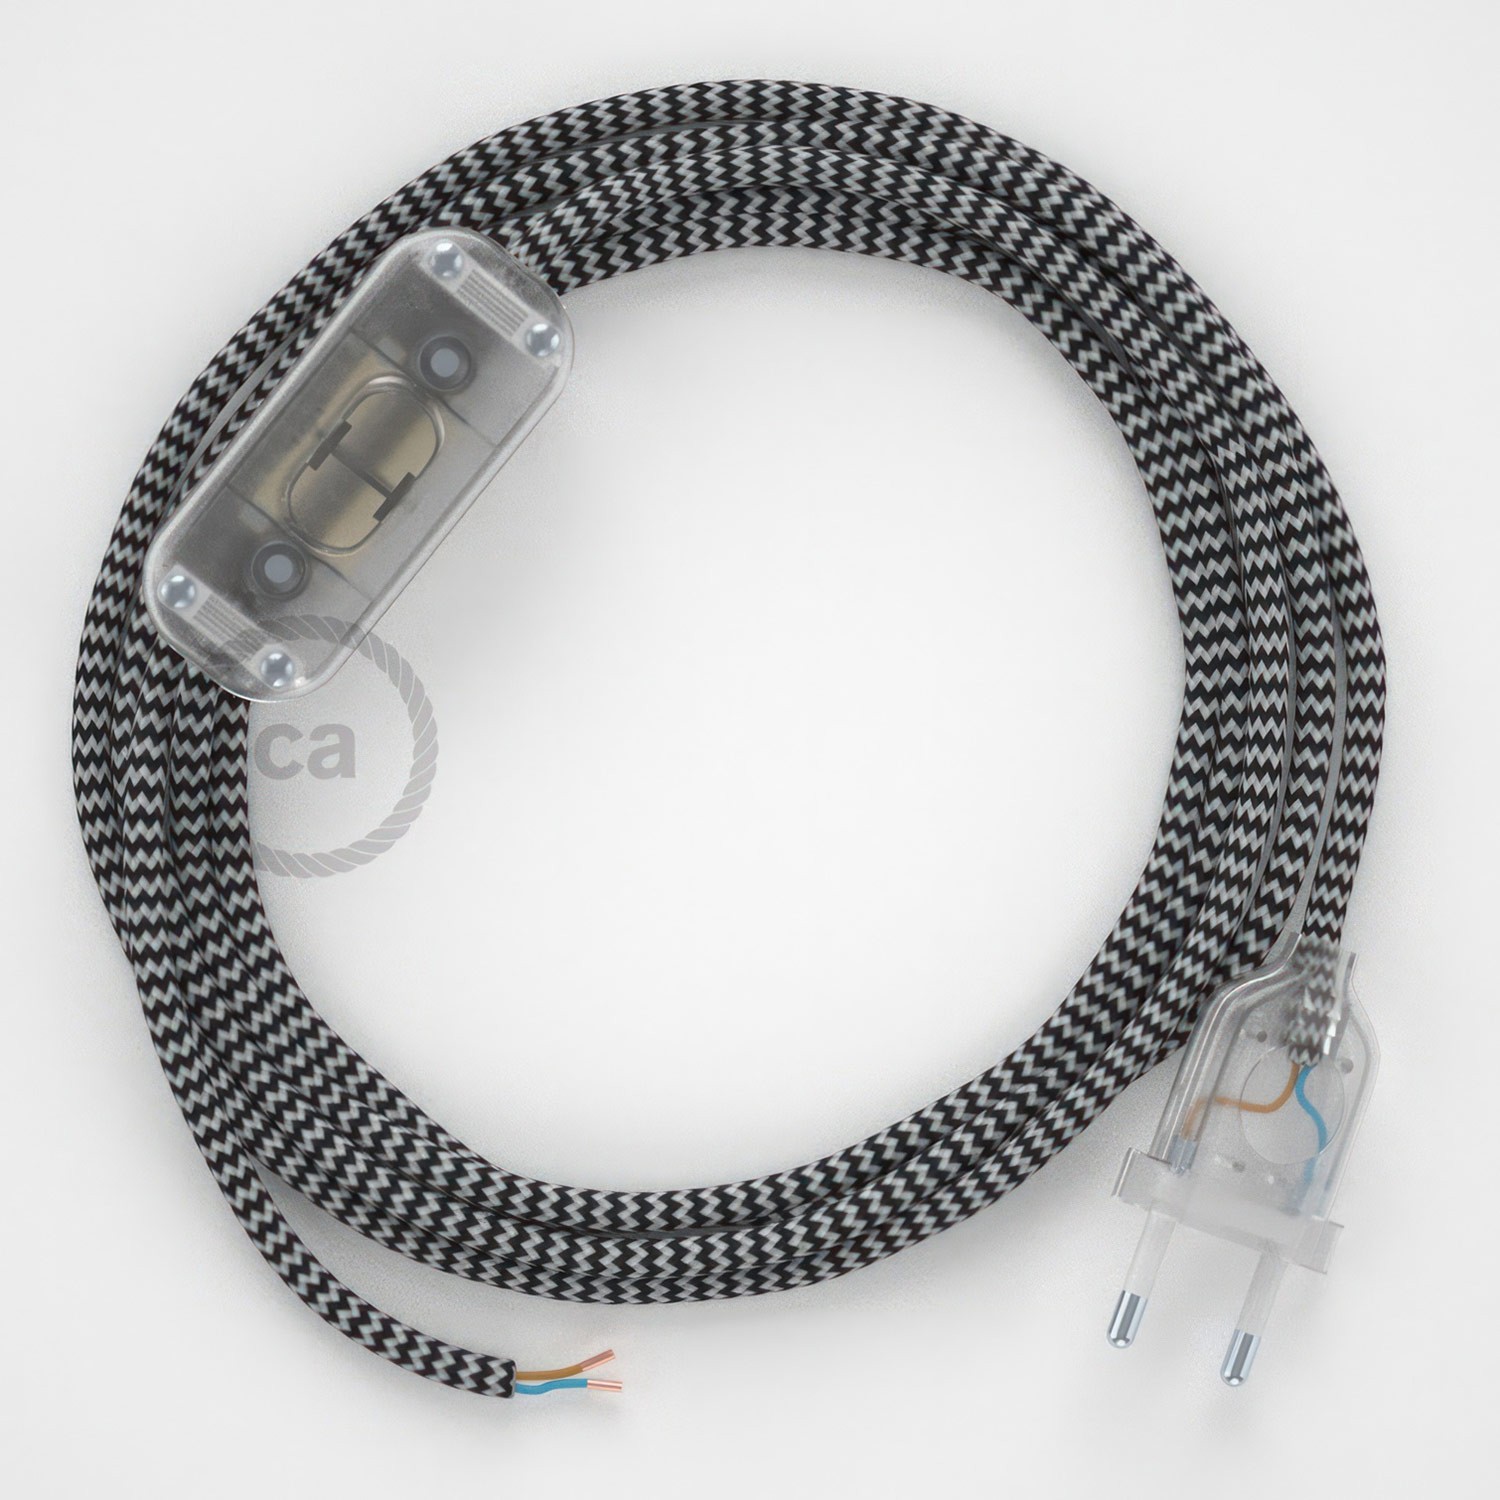 Cableado para lámpara, cable RZ04 Efecto Seda ZigZag Blanco Negro 1,8m. Elige tu el color de la clavija y del interruptor!